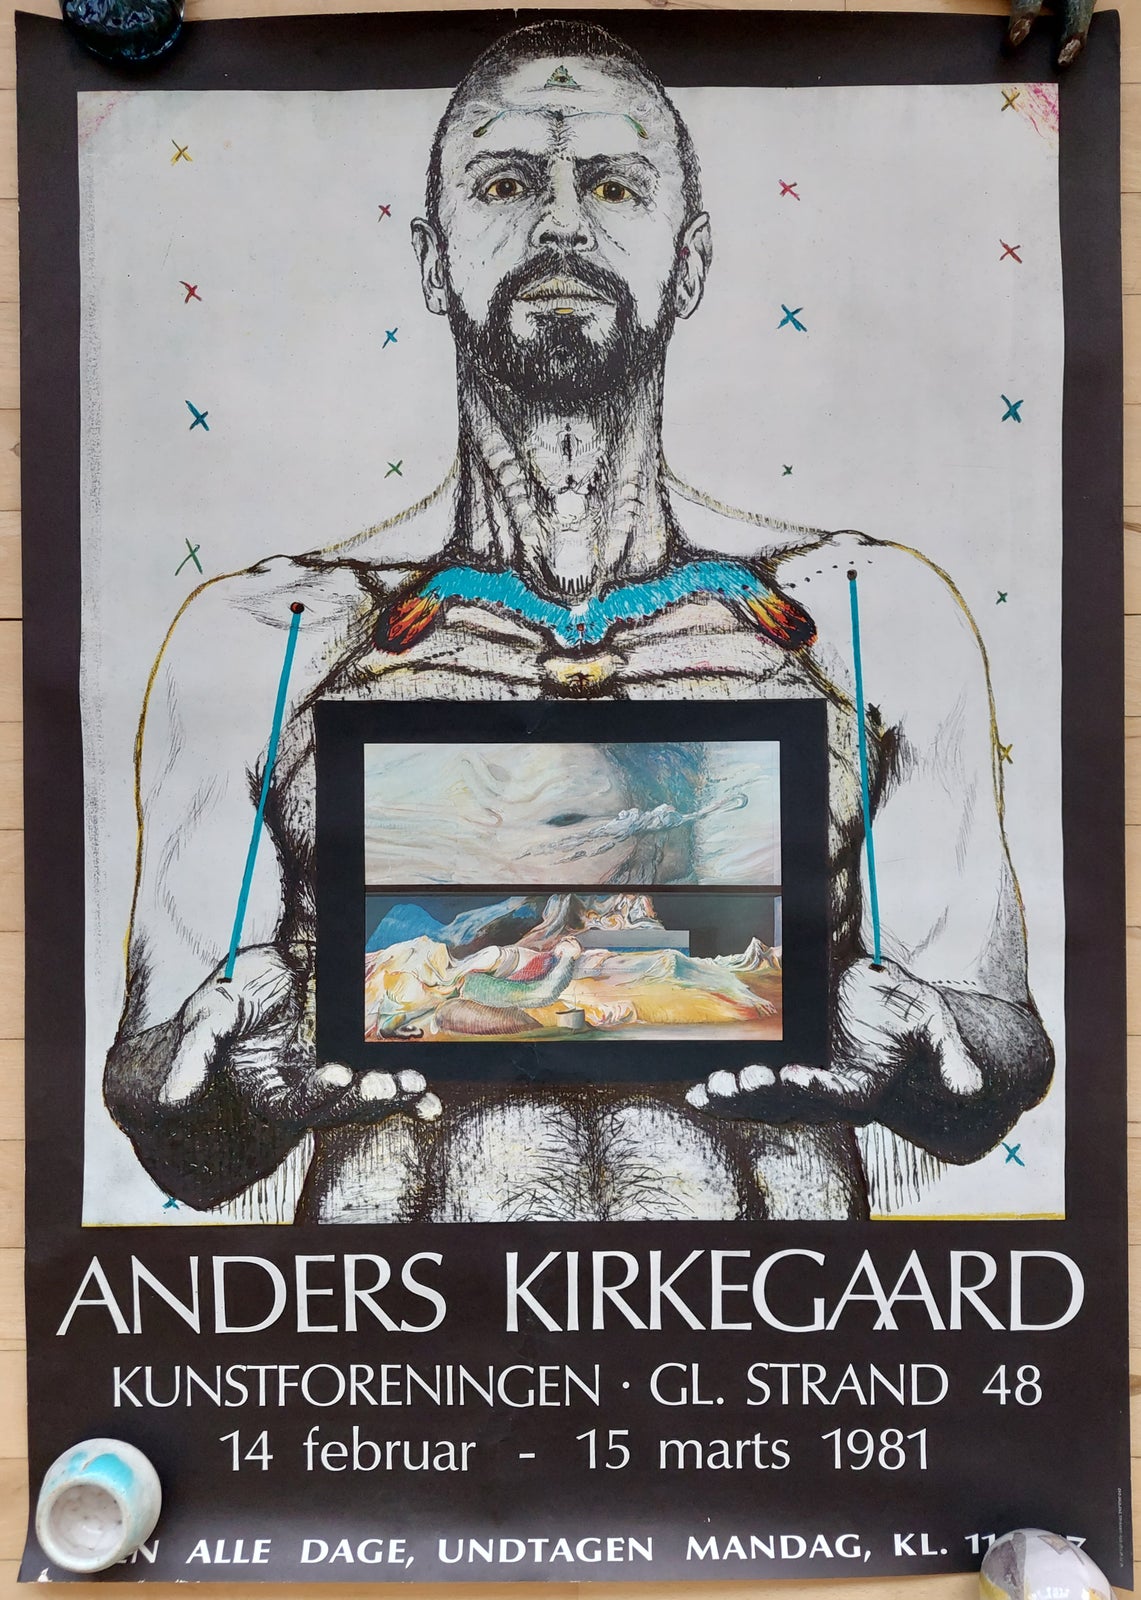 Plakat, Anders Kirkegaard, b: 59,5 h: 84